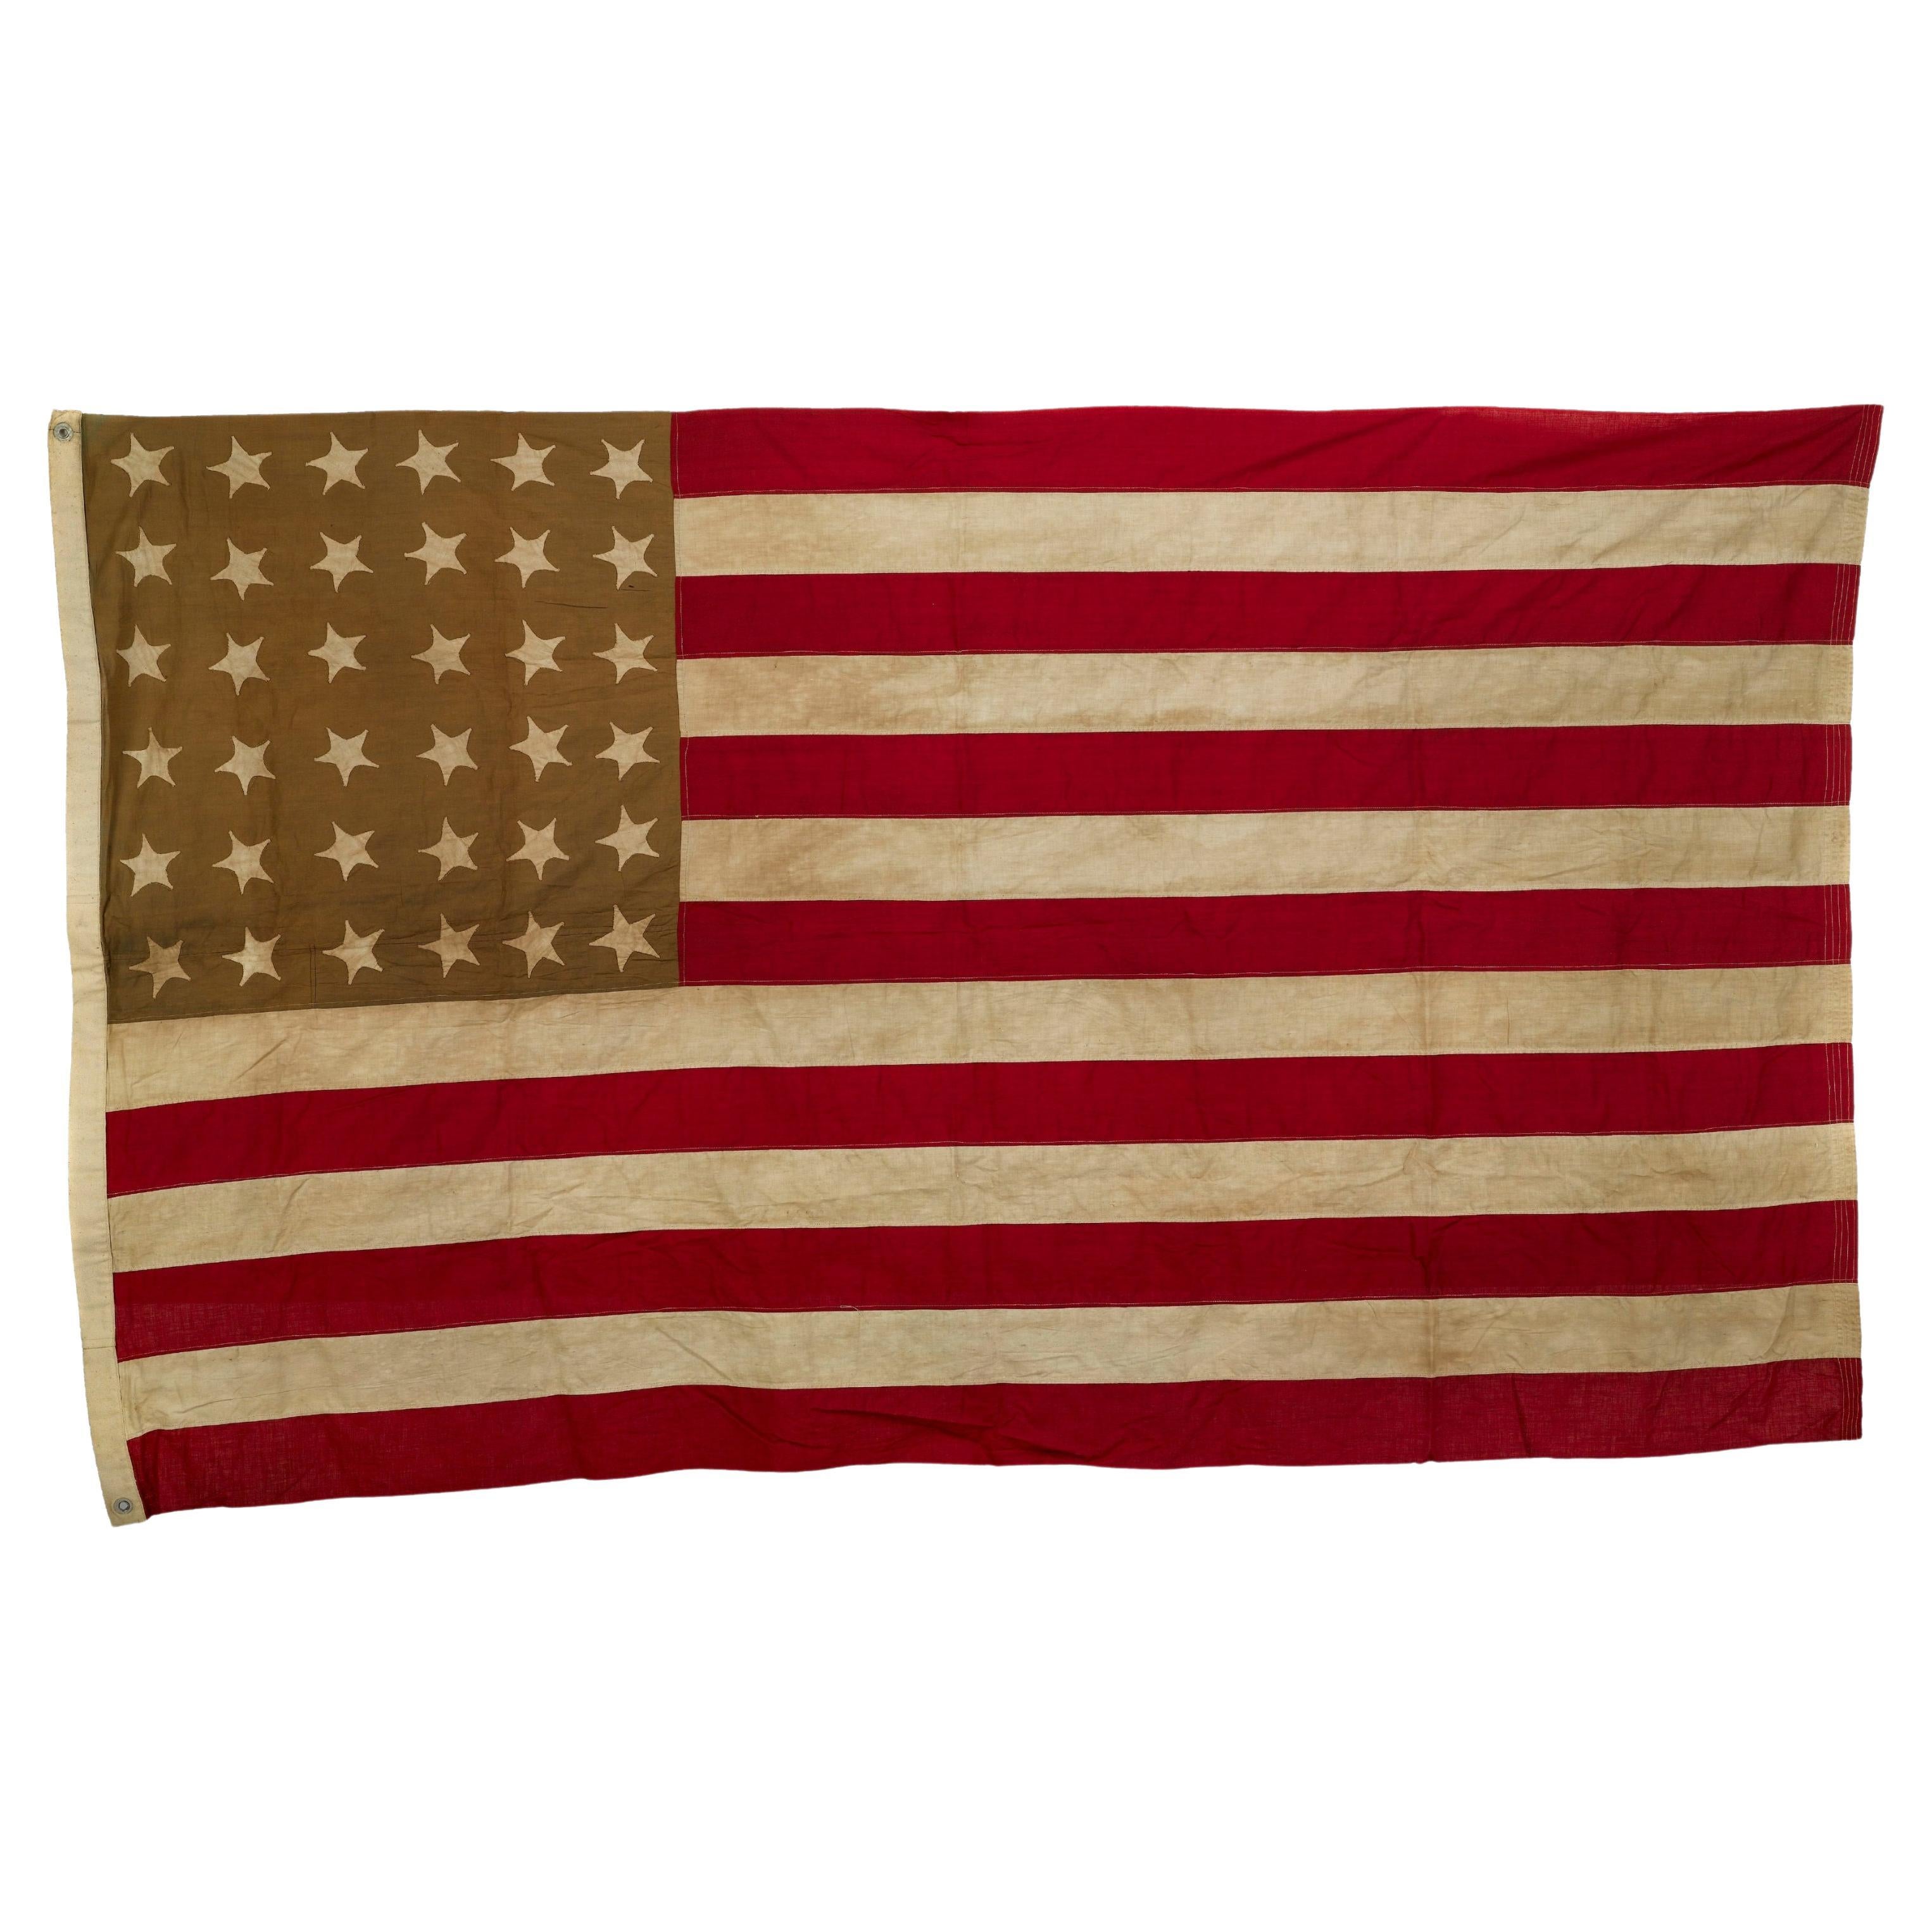 36-Star Civil War Flag, Circa 1864-65